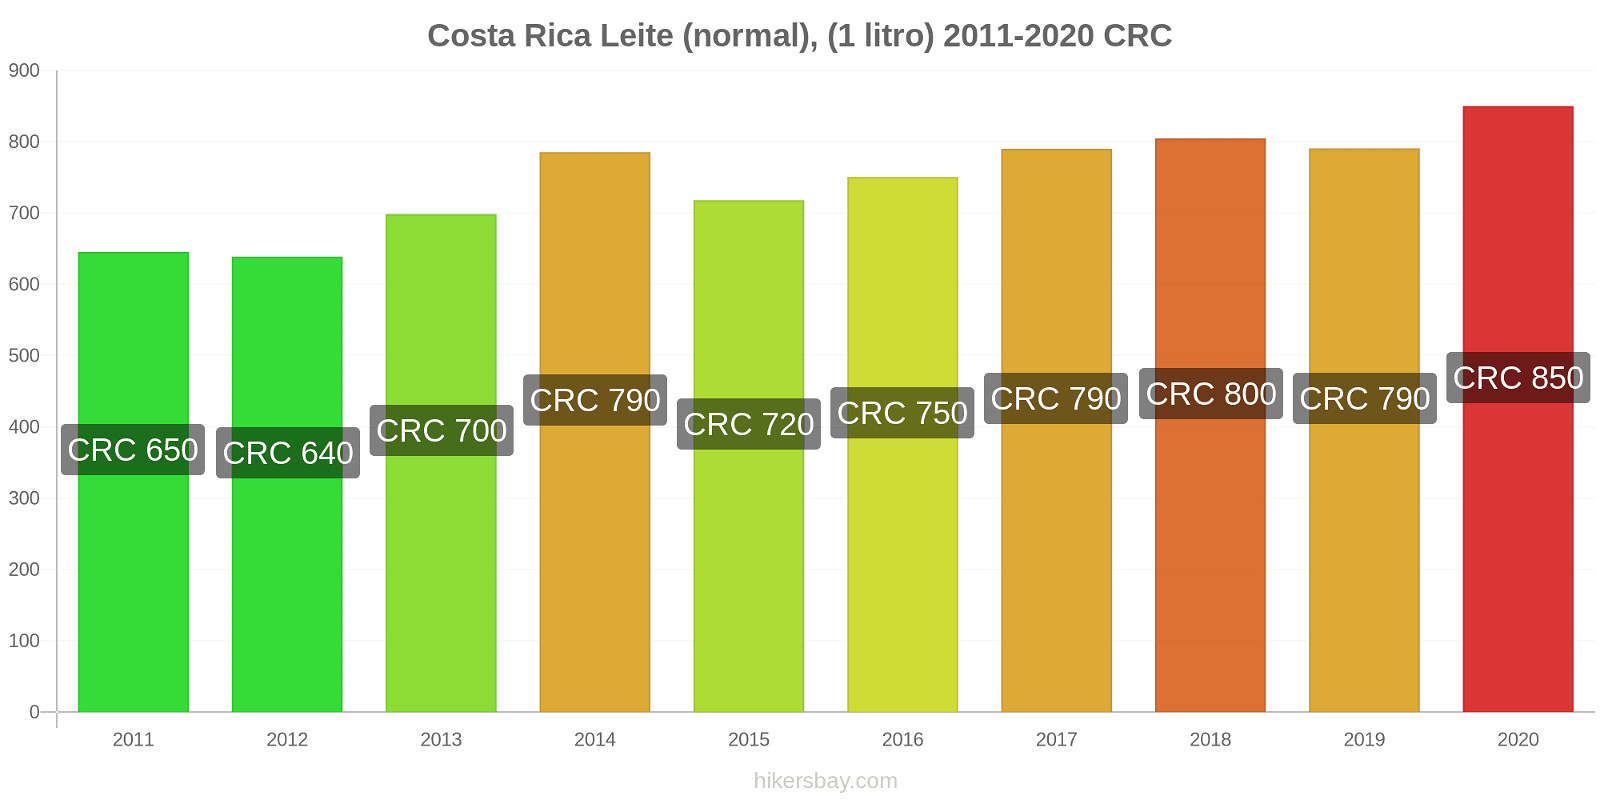 Costa Rica variação de preço (Regular), leite (1 litro) hikersbay.com